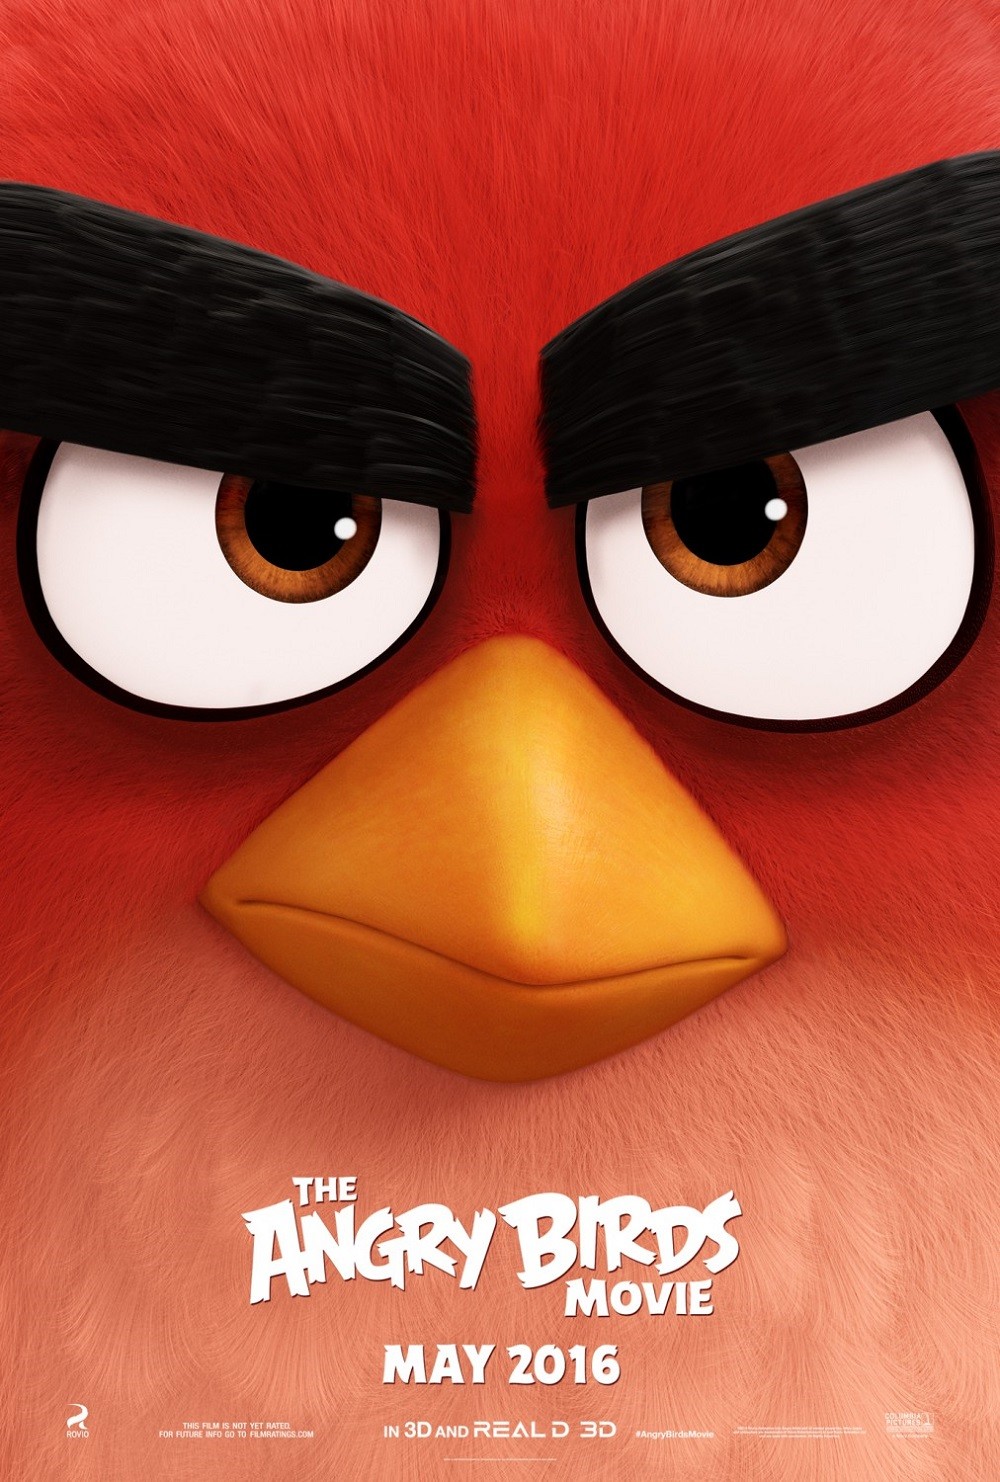 Nuevo tráiler de "Angry Birds": la adaptación más esperada